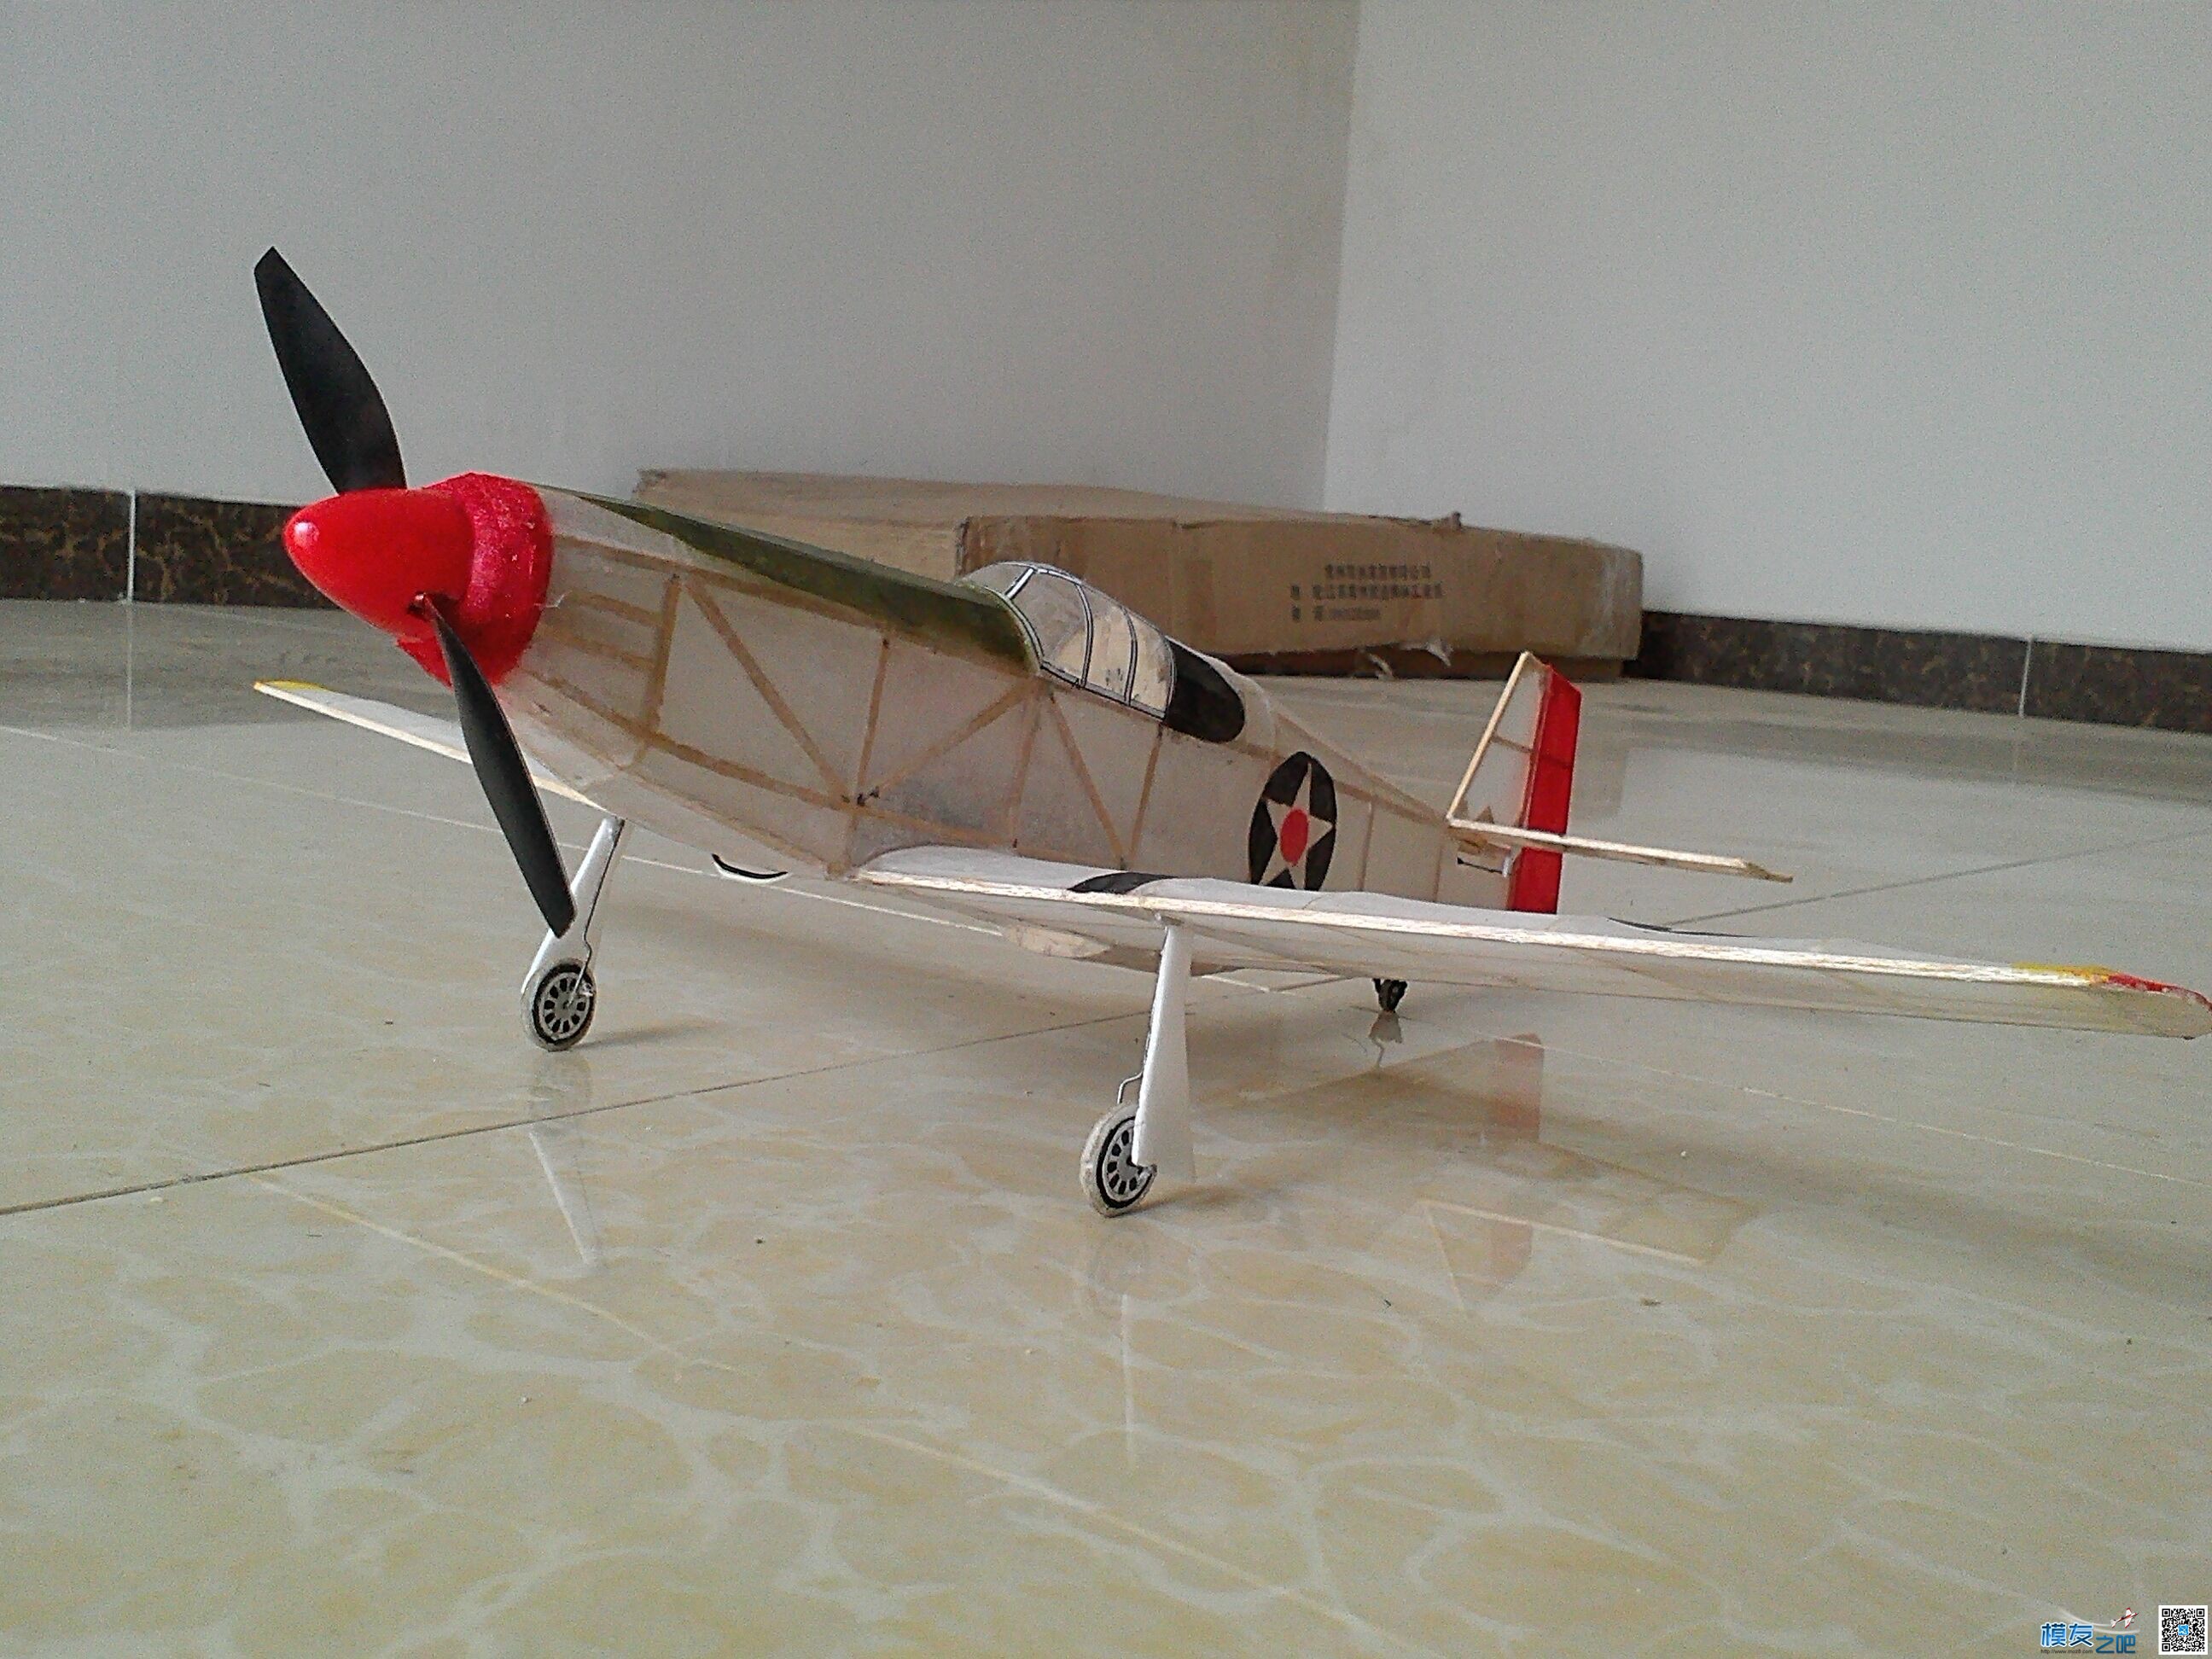 迷你轻木机野马P51a 固定翼,舵机,图纸,接收机 作者:飞翔的橡皮筋 2418 